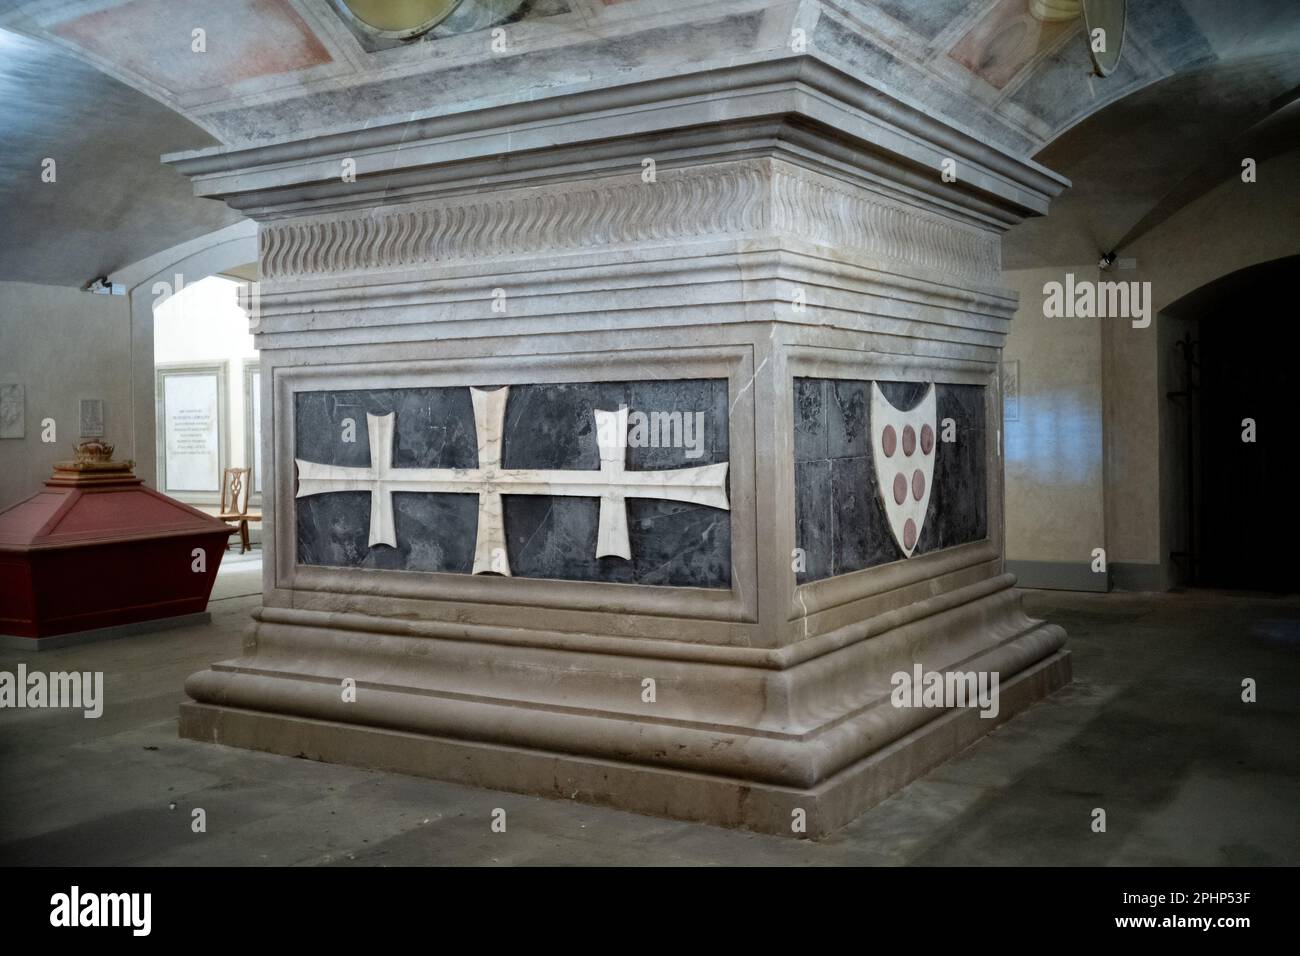 Tumba de Verrochio de Cosimo el Viejo en la cripta de la iglesia de San Lorenzo, Florencia Foto de stock